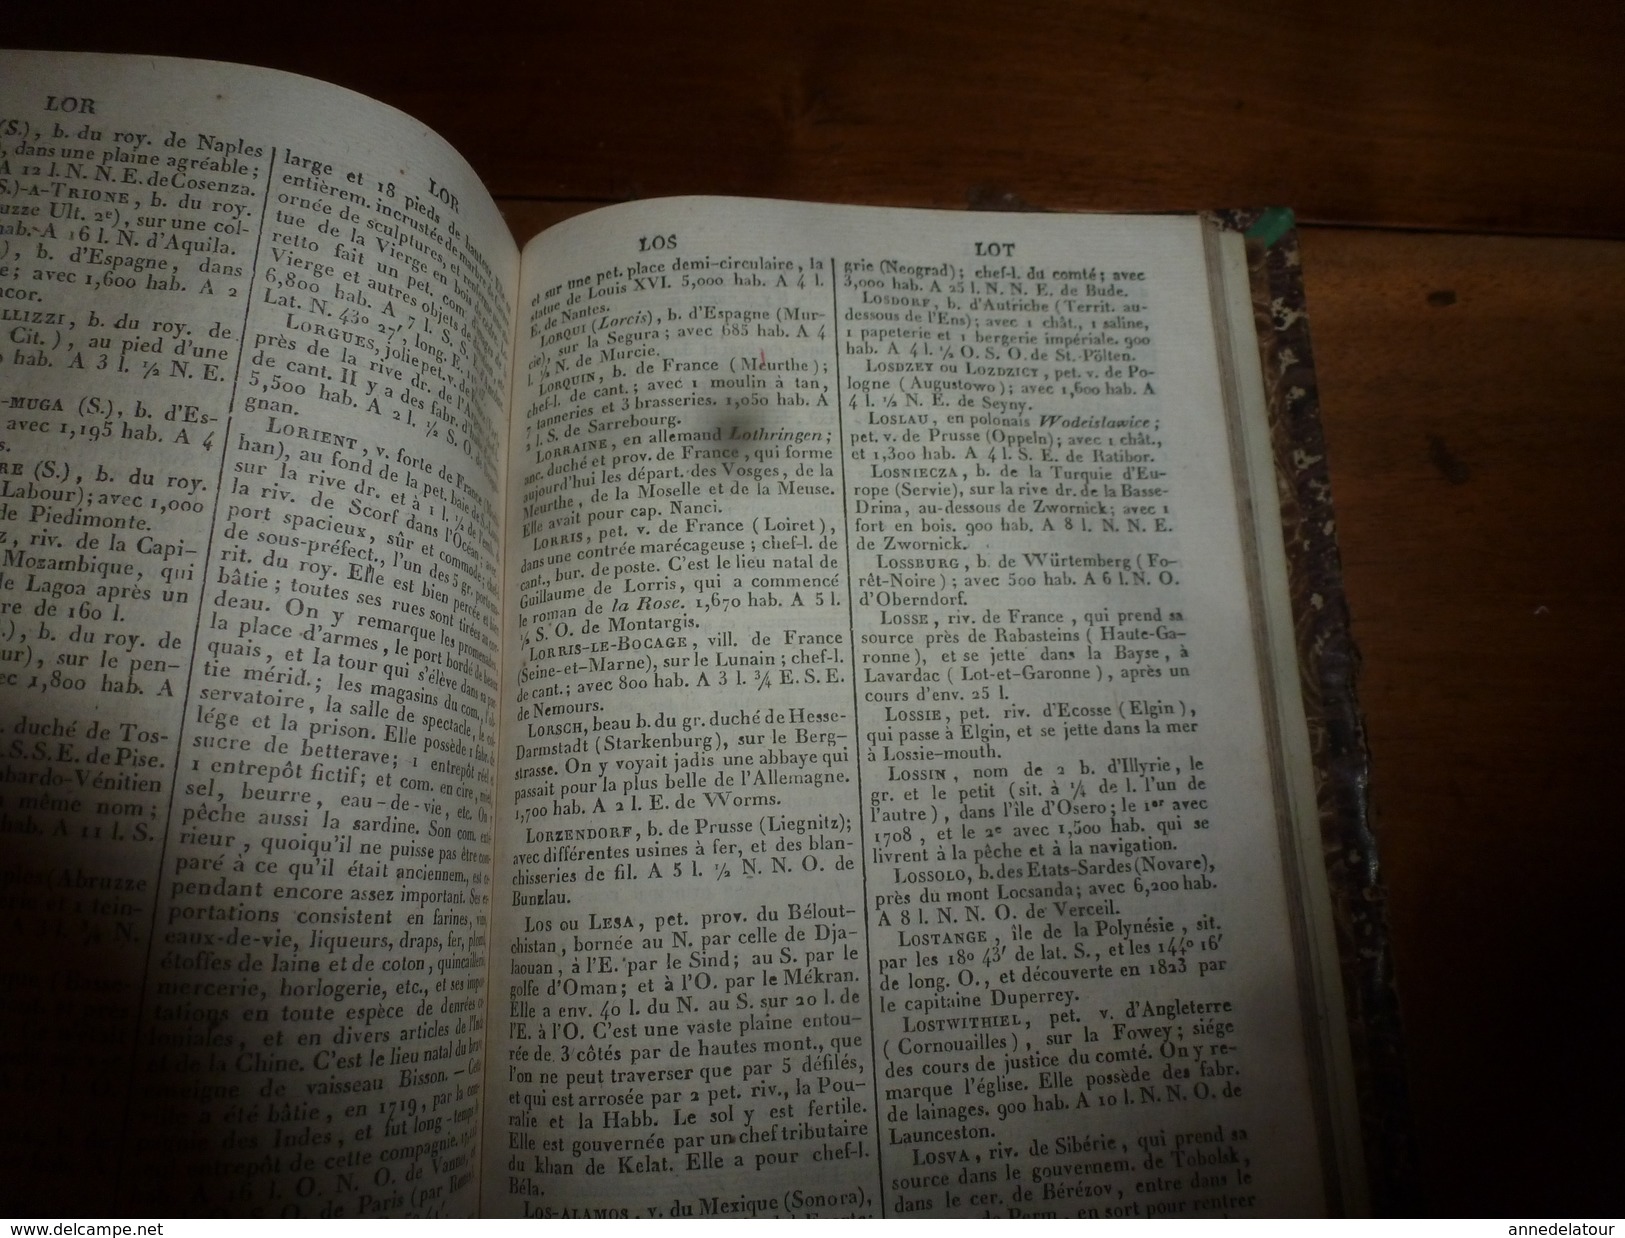 1841 Dictionnaire Universel de Géographie MAC CARTHY , tome 1er  (Physique,Politique, Historique et Commercial)